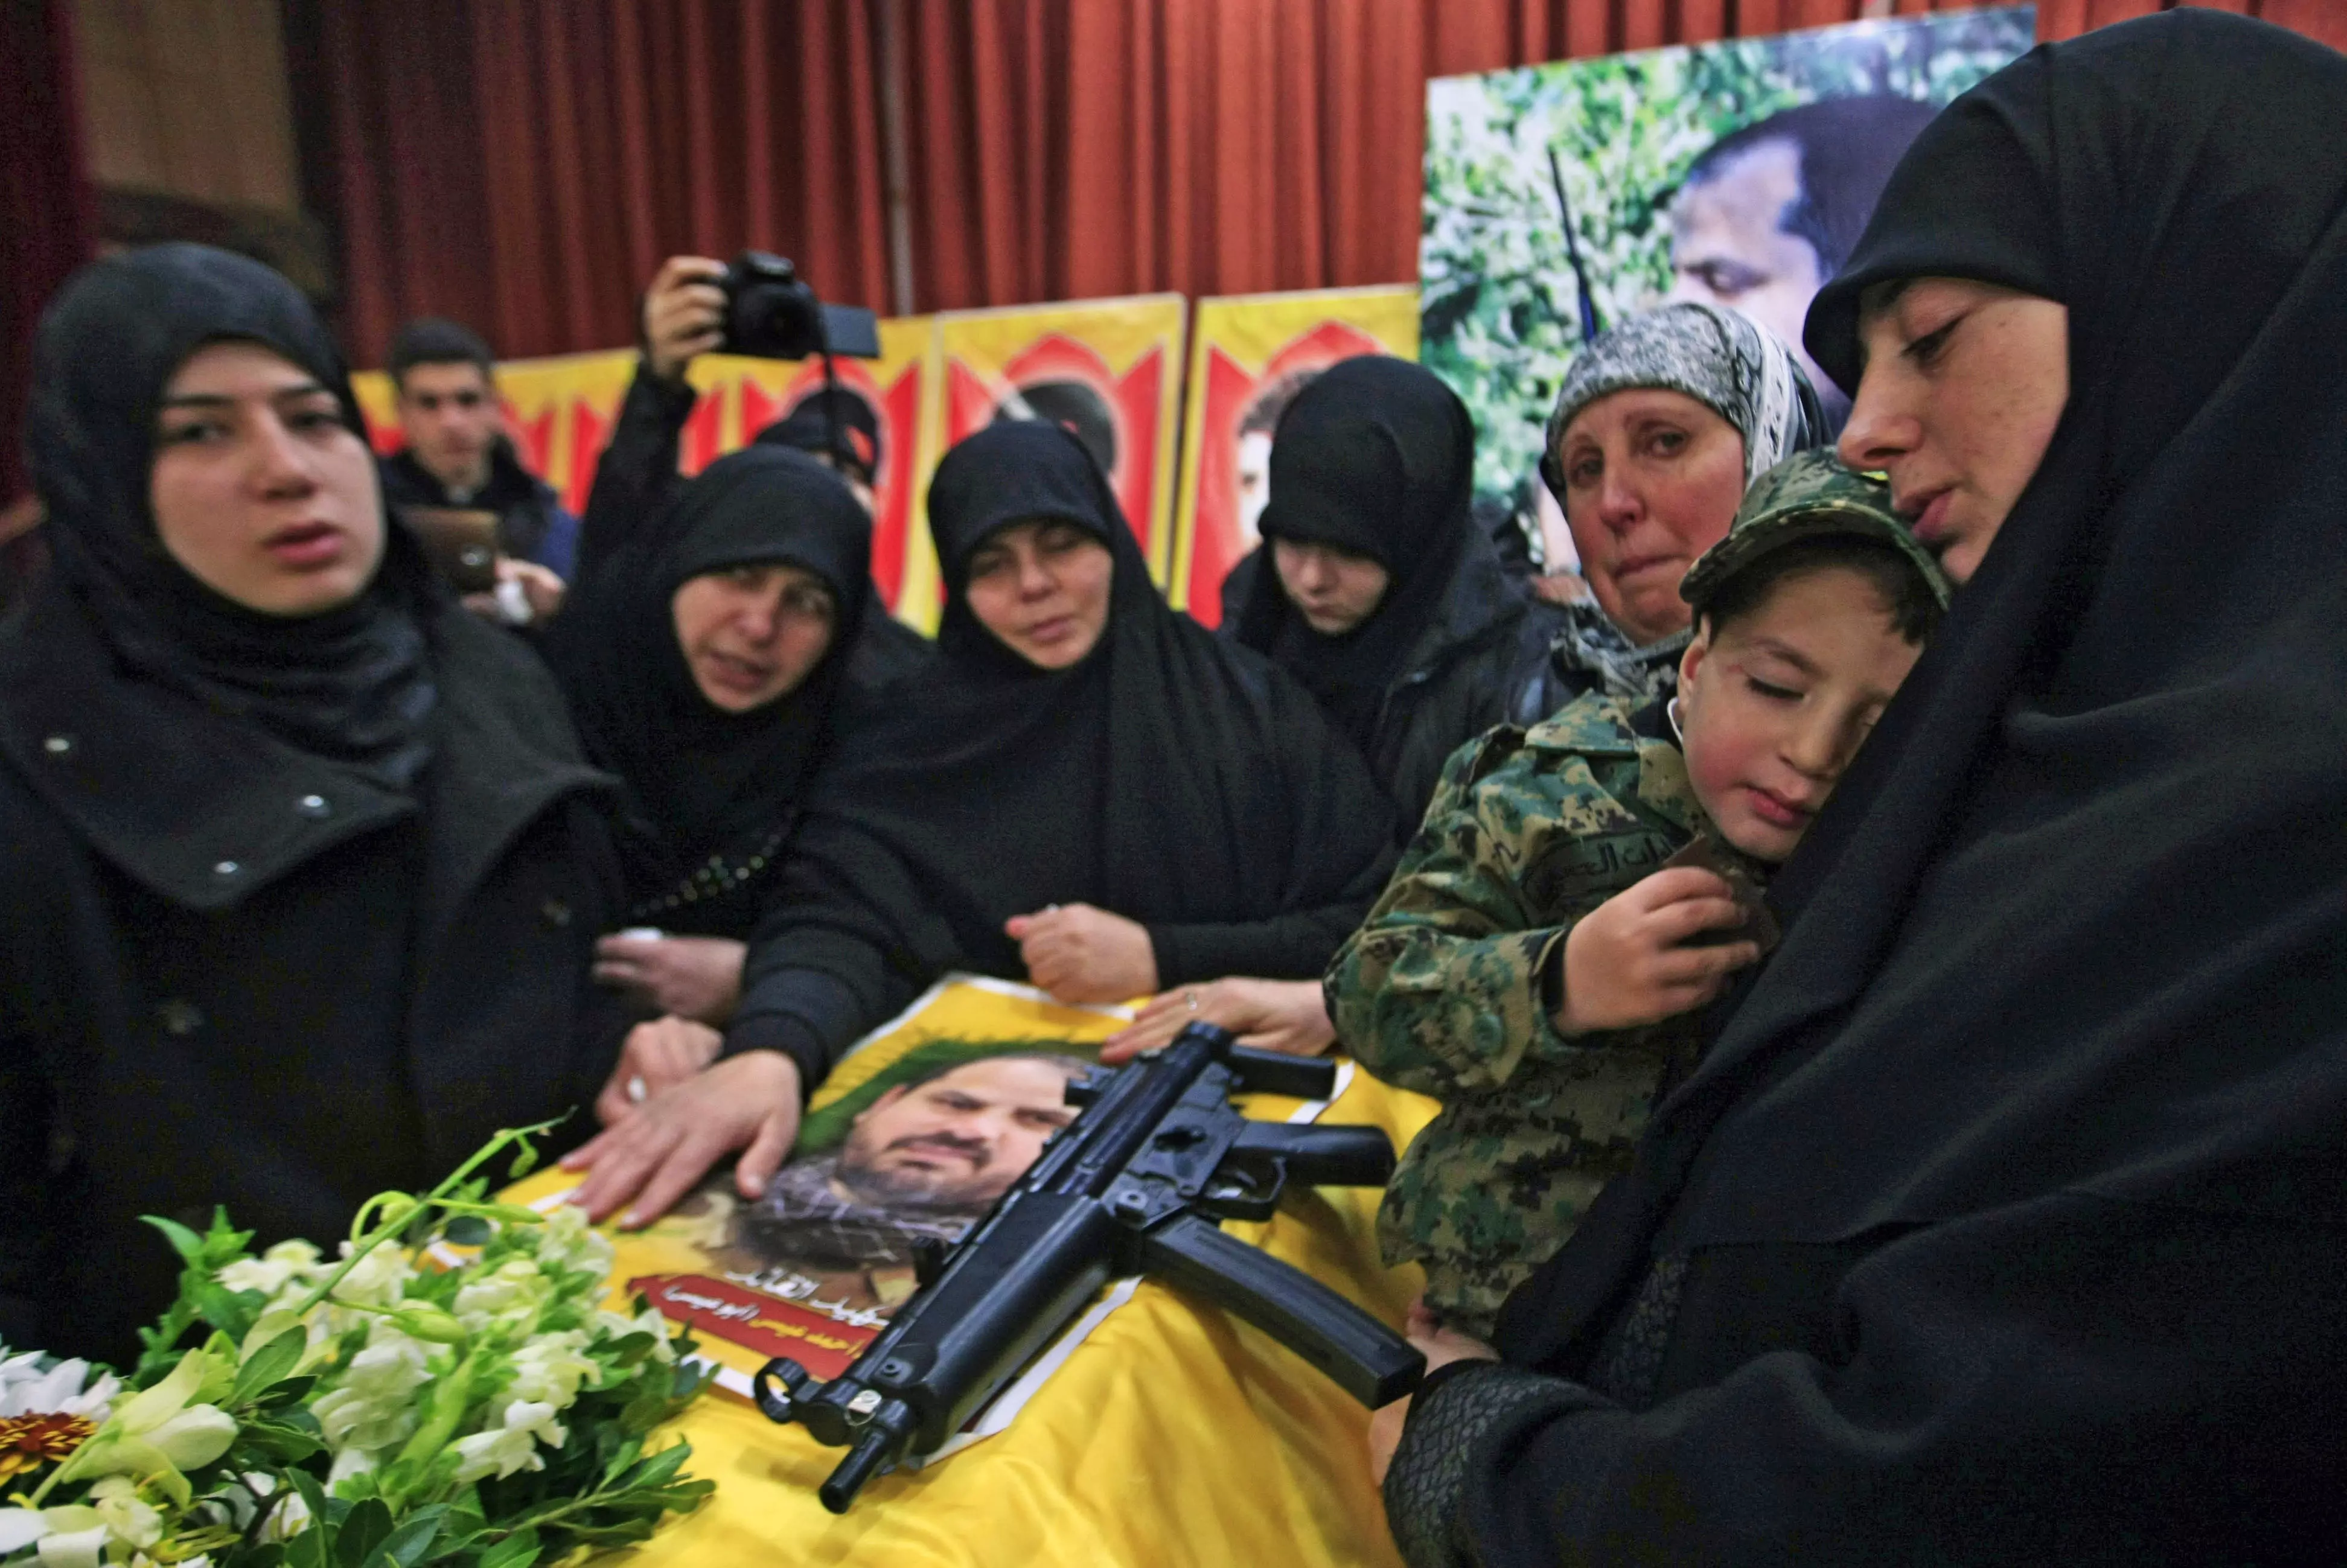 مئات الجرحى تقض مضاجعه ... حزب الله الارهابي تزداد مشاكله "الوجستية" خلال الشهريين الماضيين